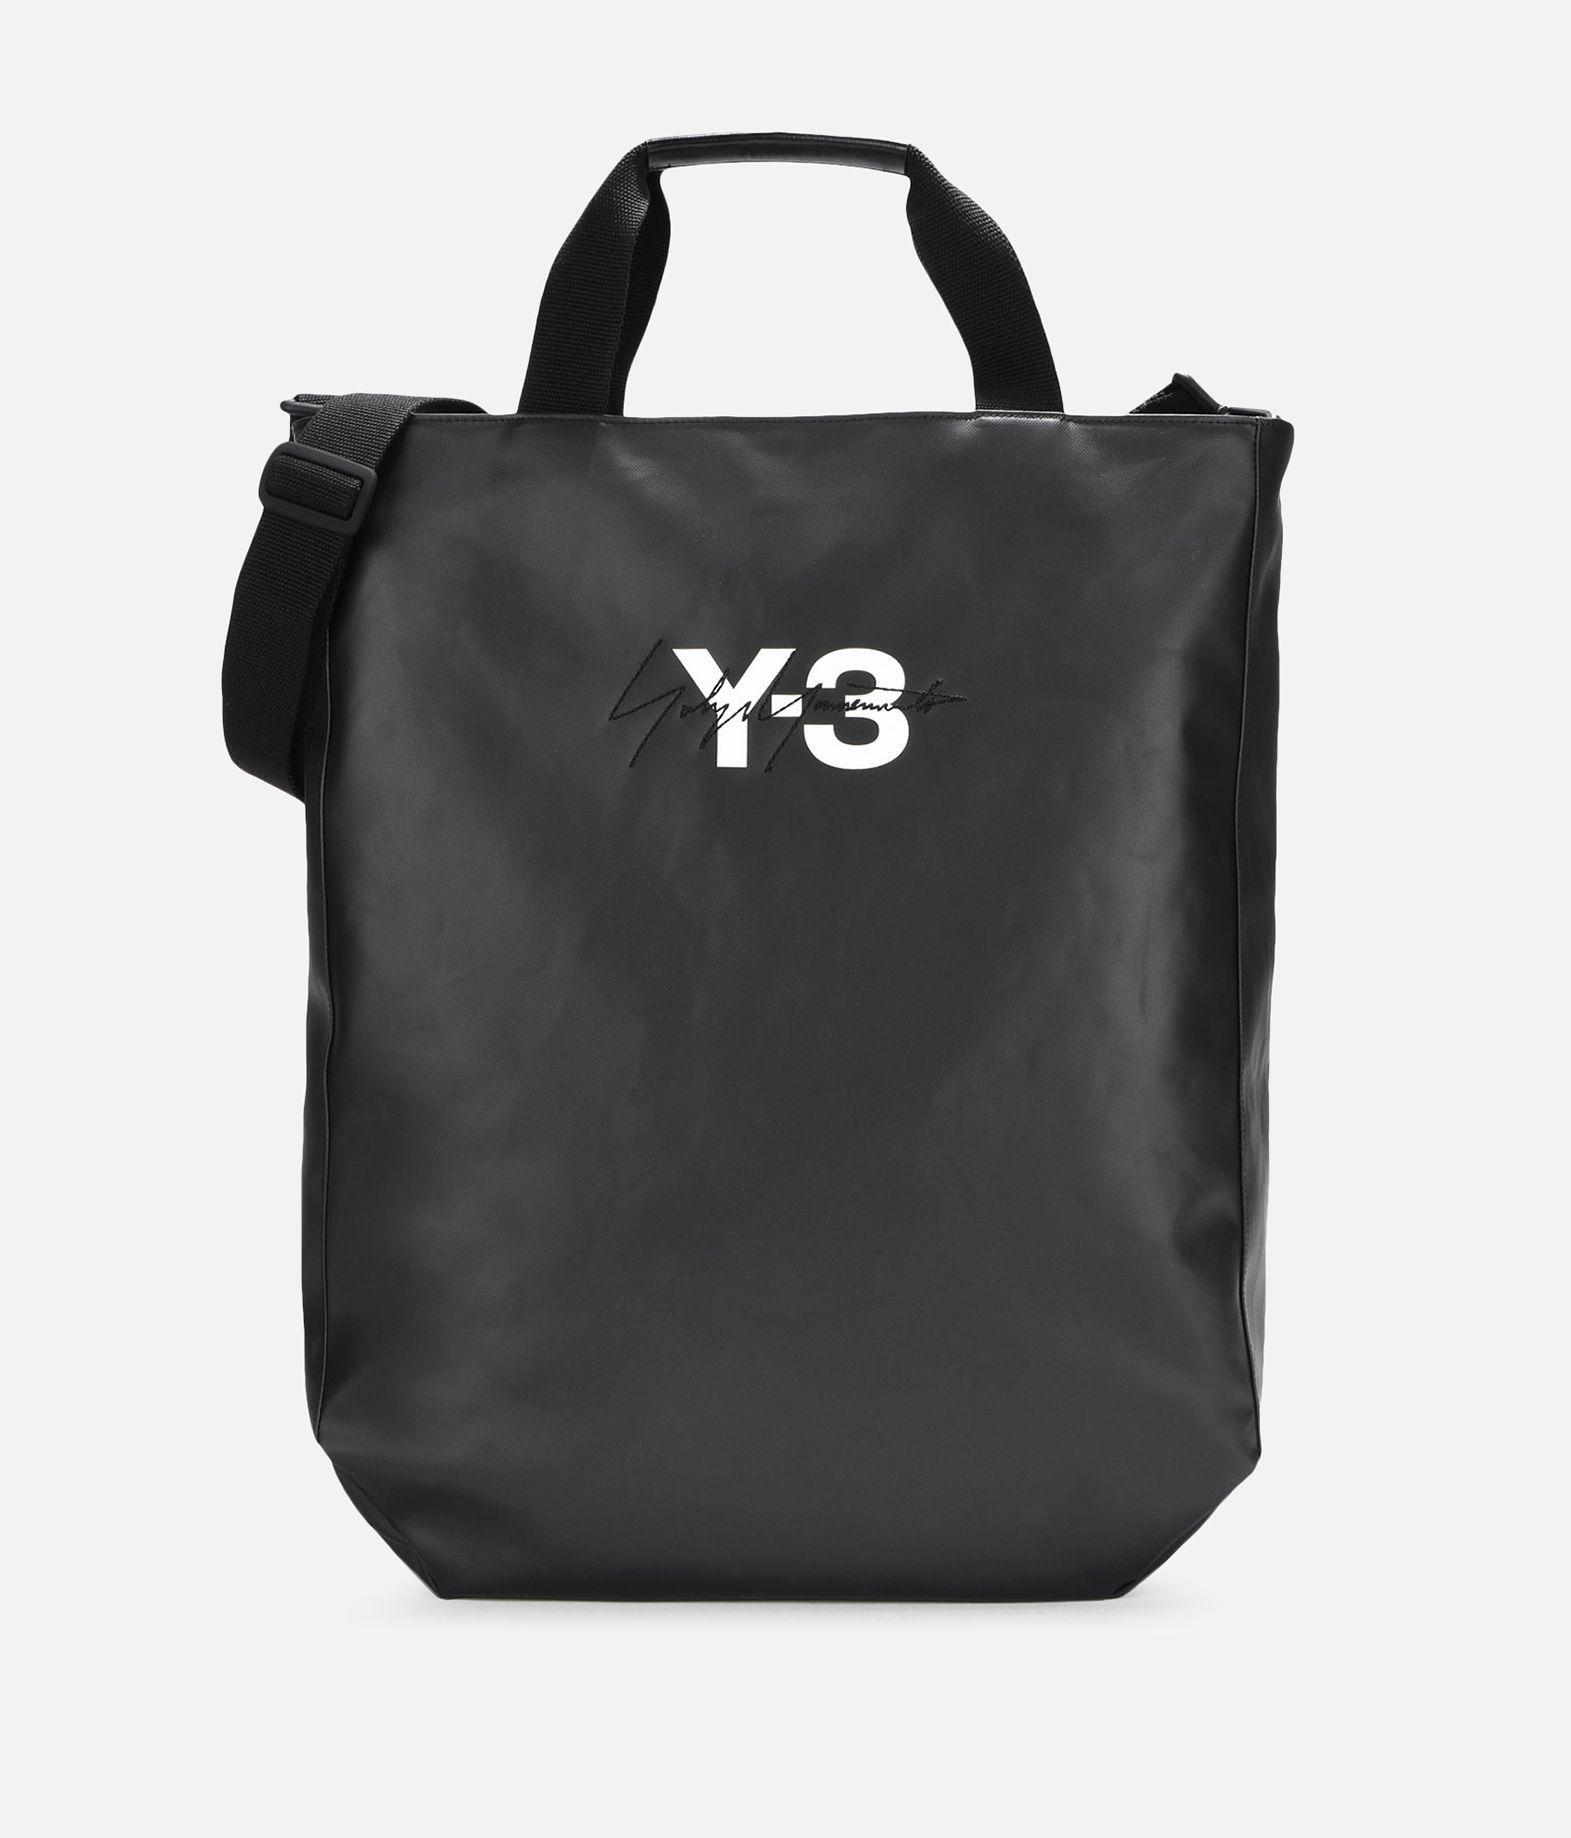 Y3 Logo - Y 3 Logo Tote Bag Totes | Adidas Y-3 Official Site